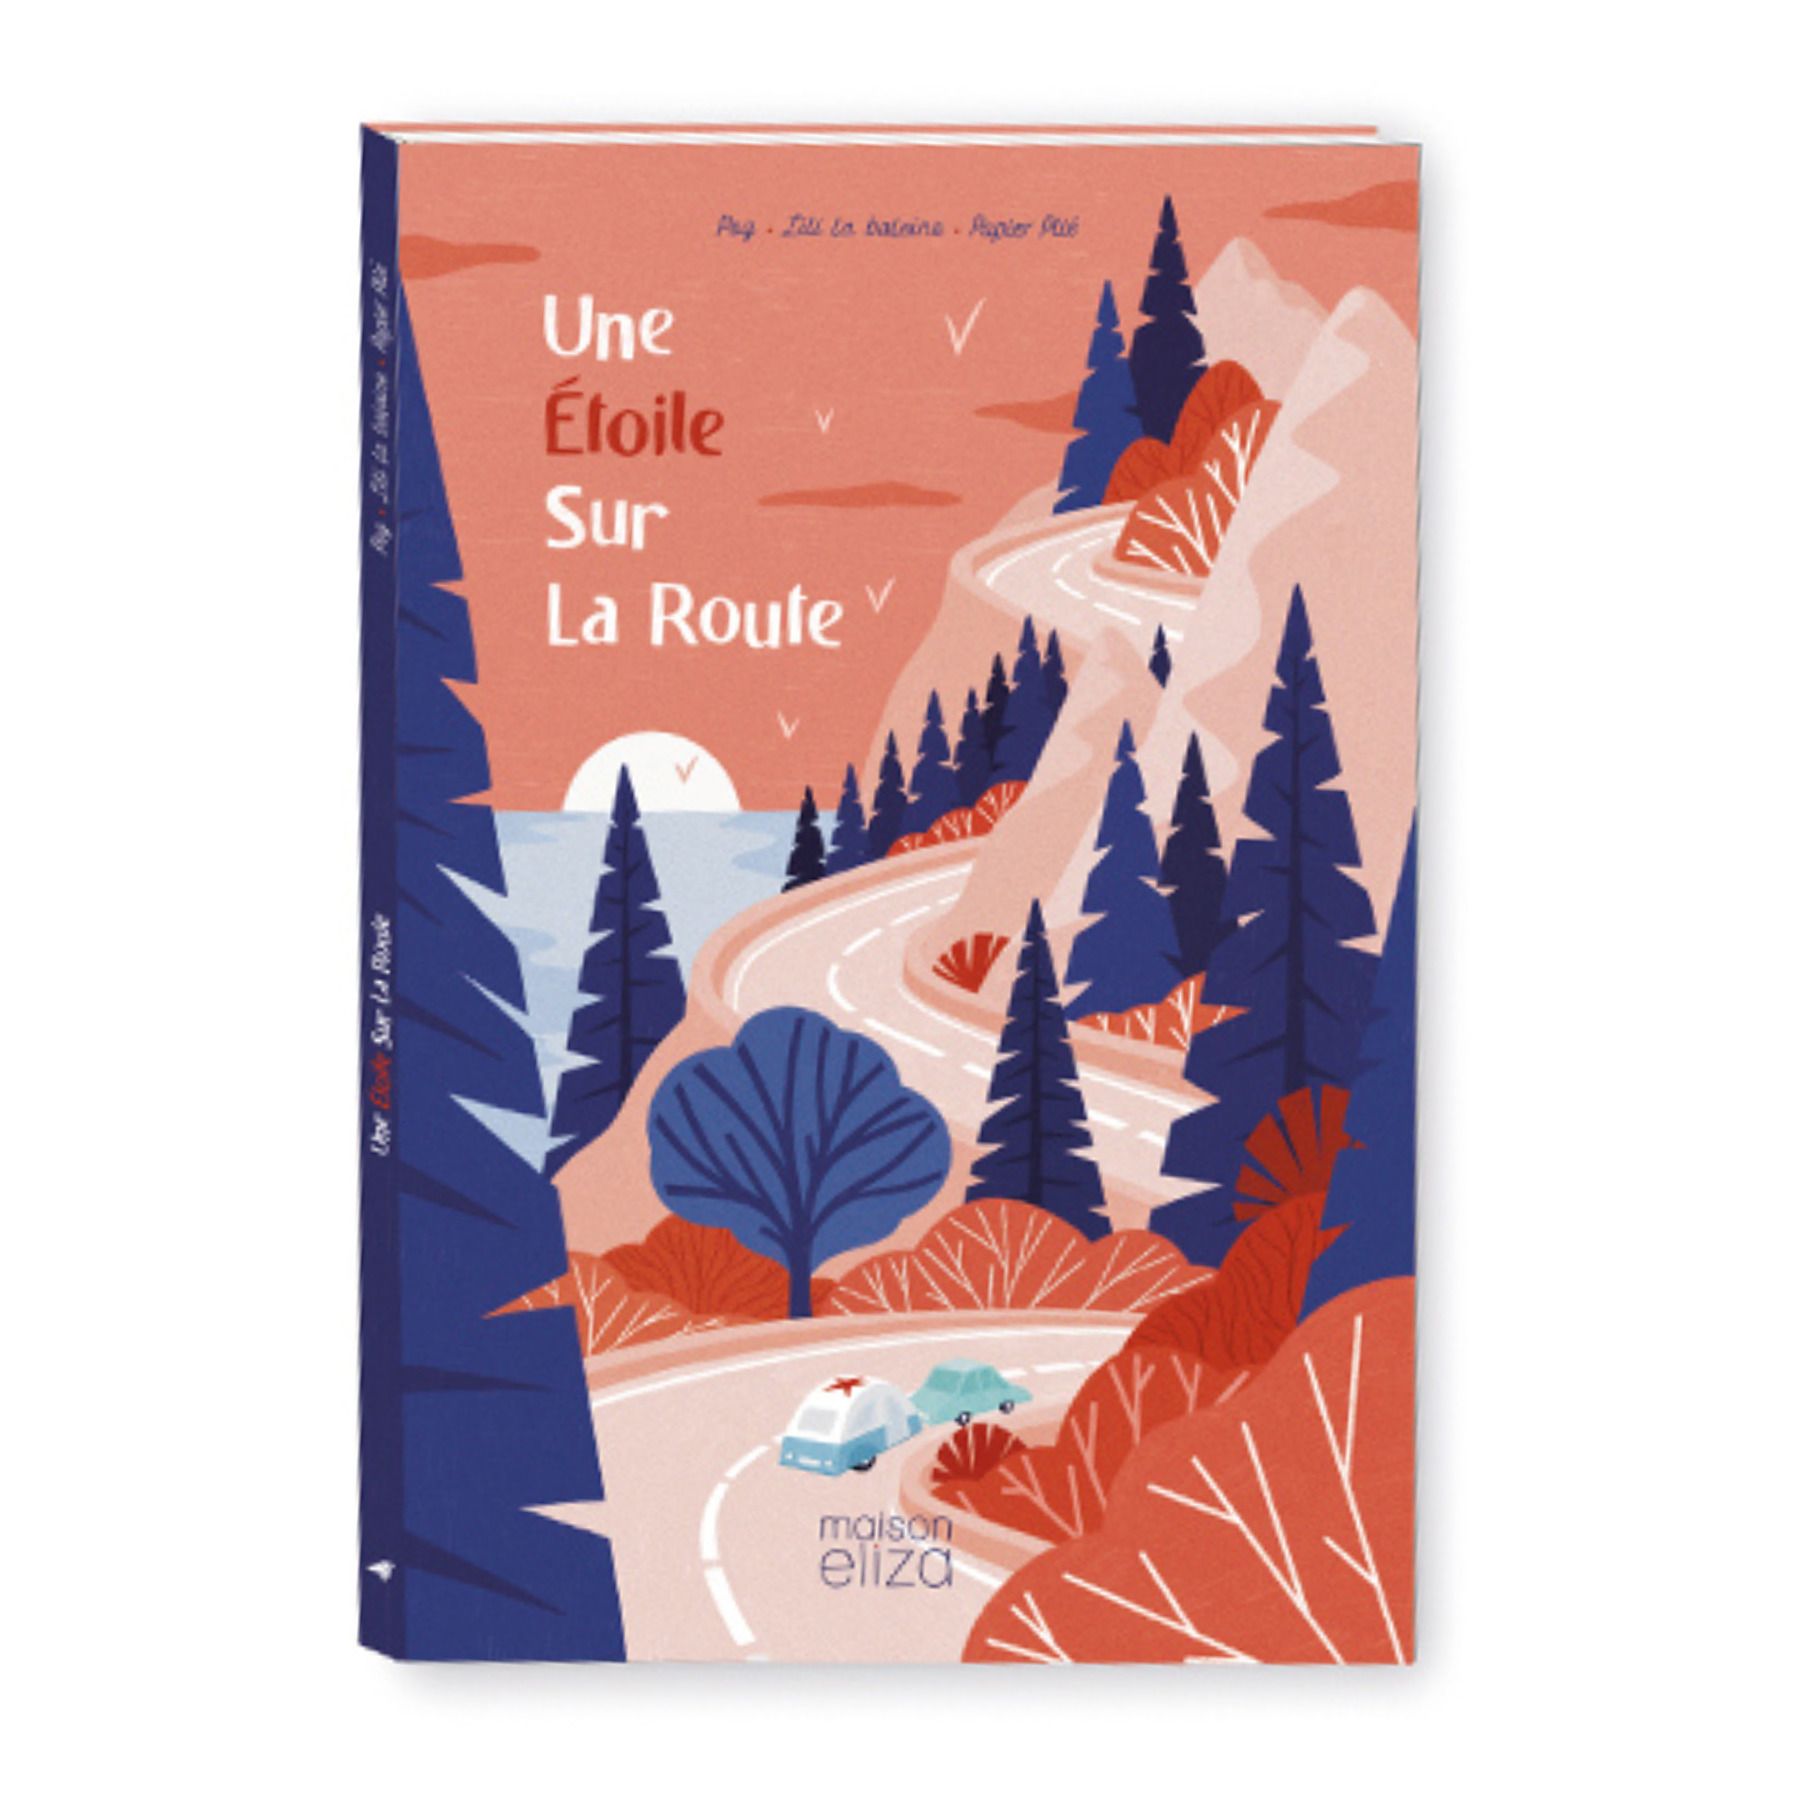 Maison Eliza - Livre Une Etoile Sur La Route - Pog & Lili la baleine - Multicolore